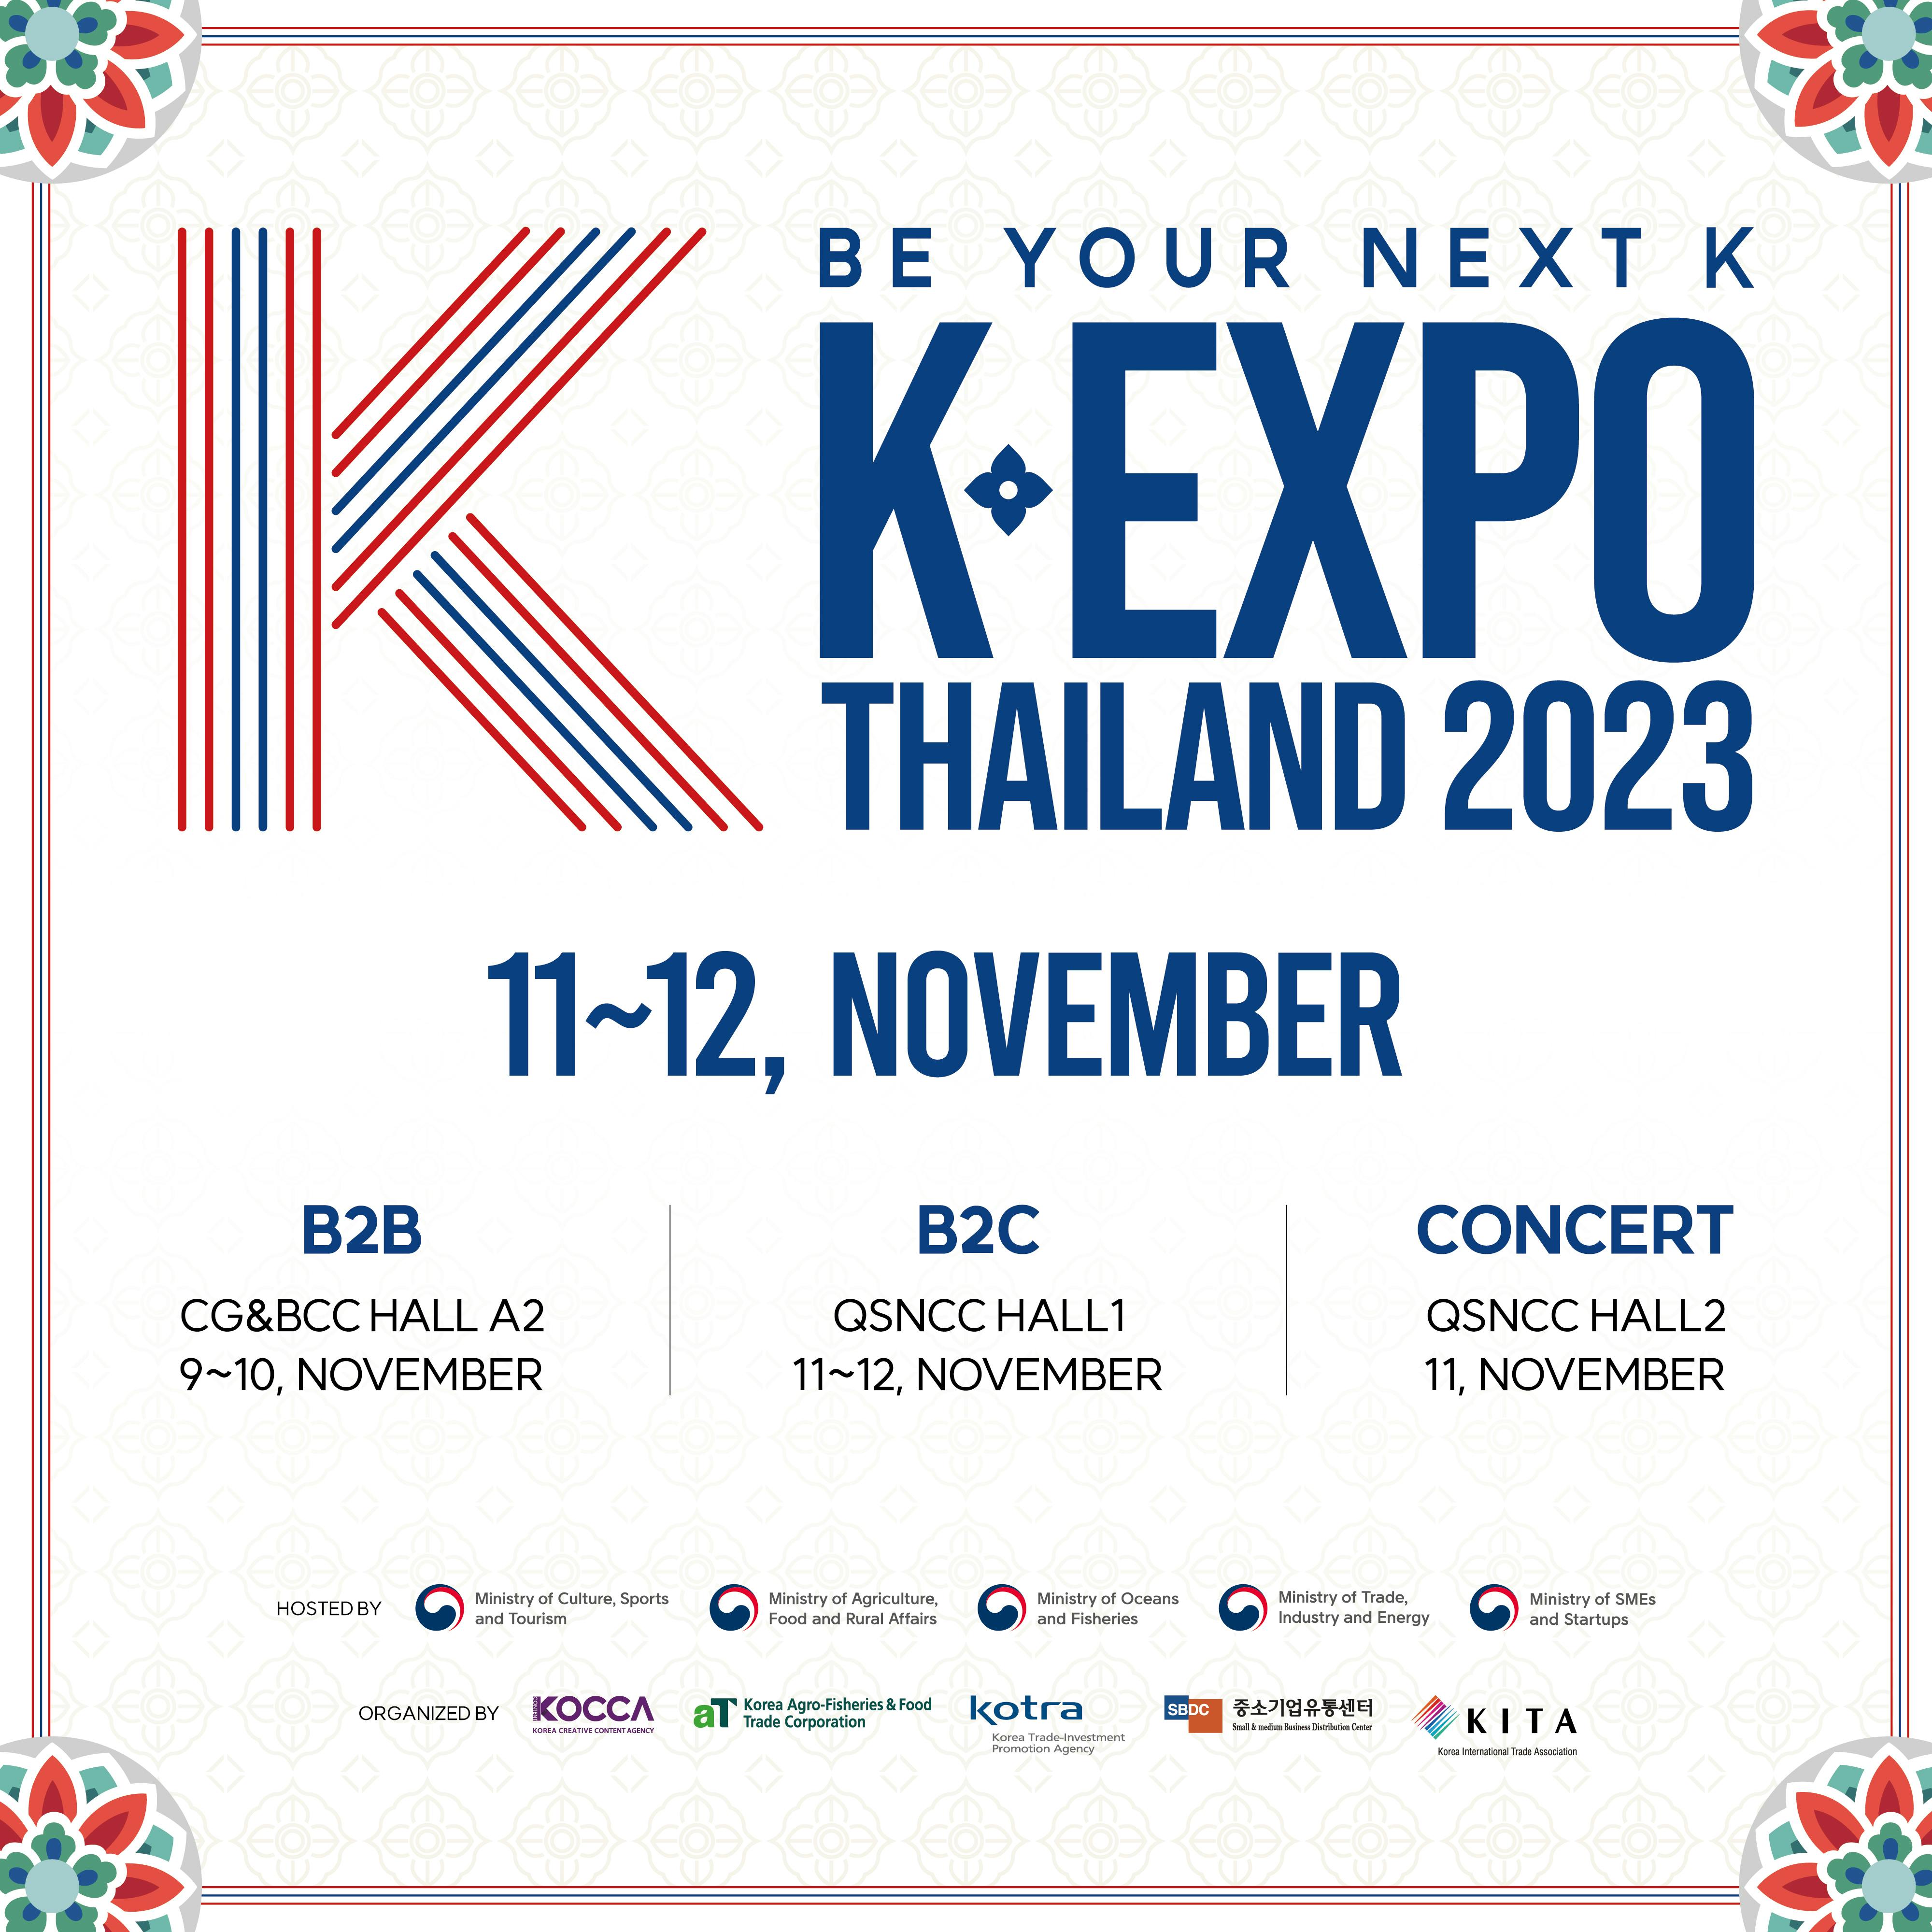 K-EXPO THAILAND 2023